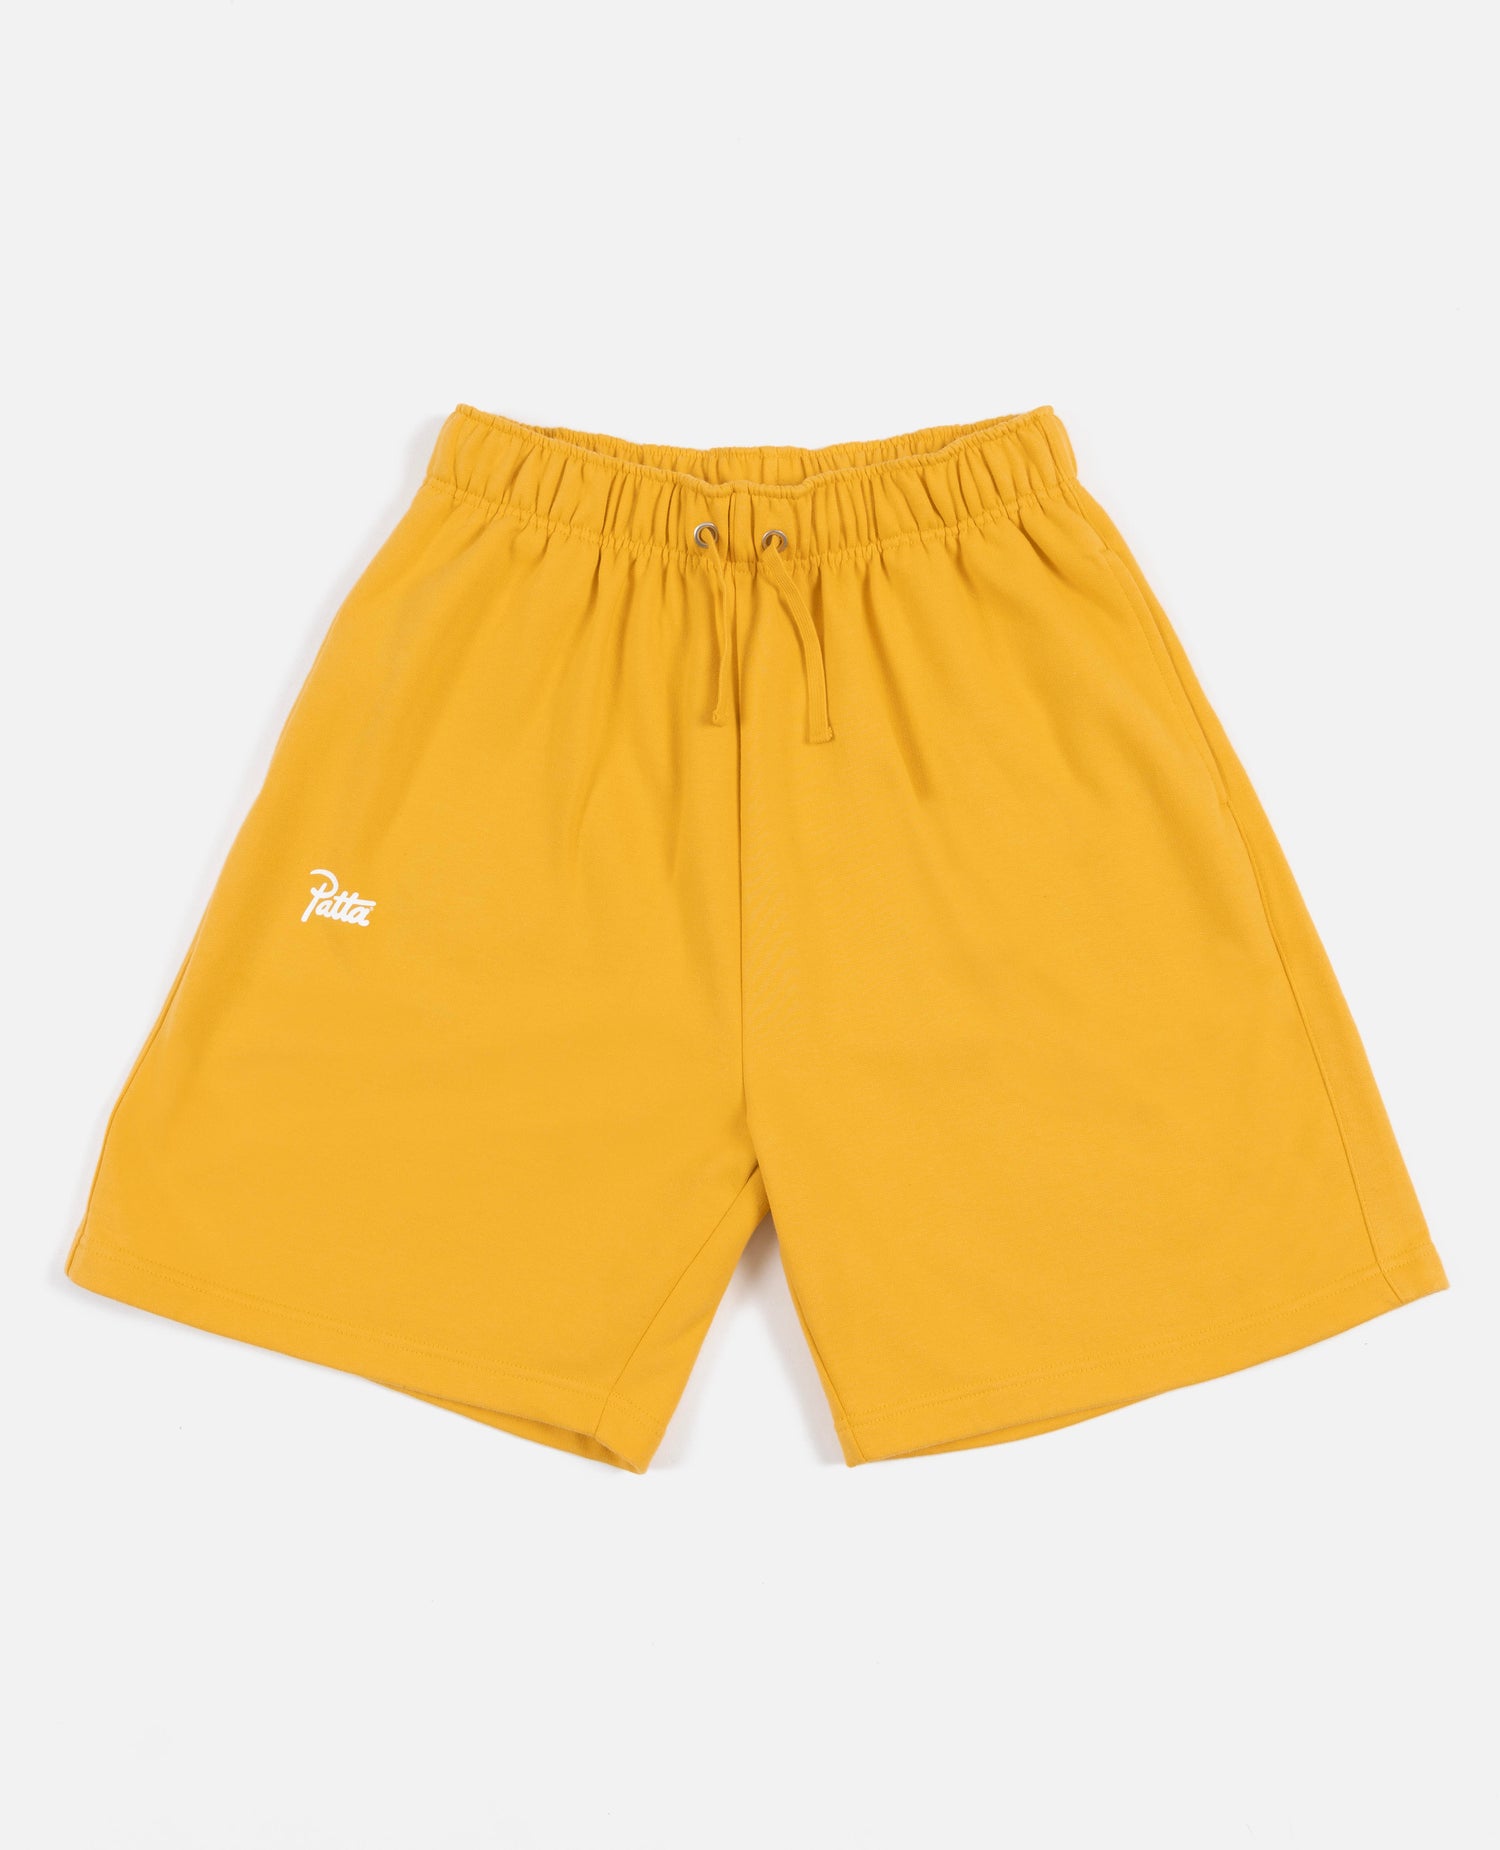 Pantaloncini da jogging Patta Basic (giallo tuorlo)